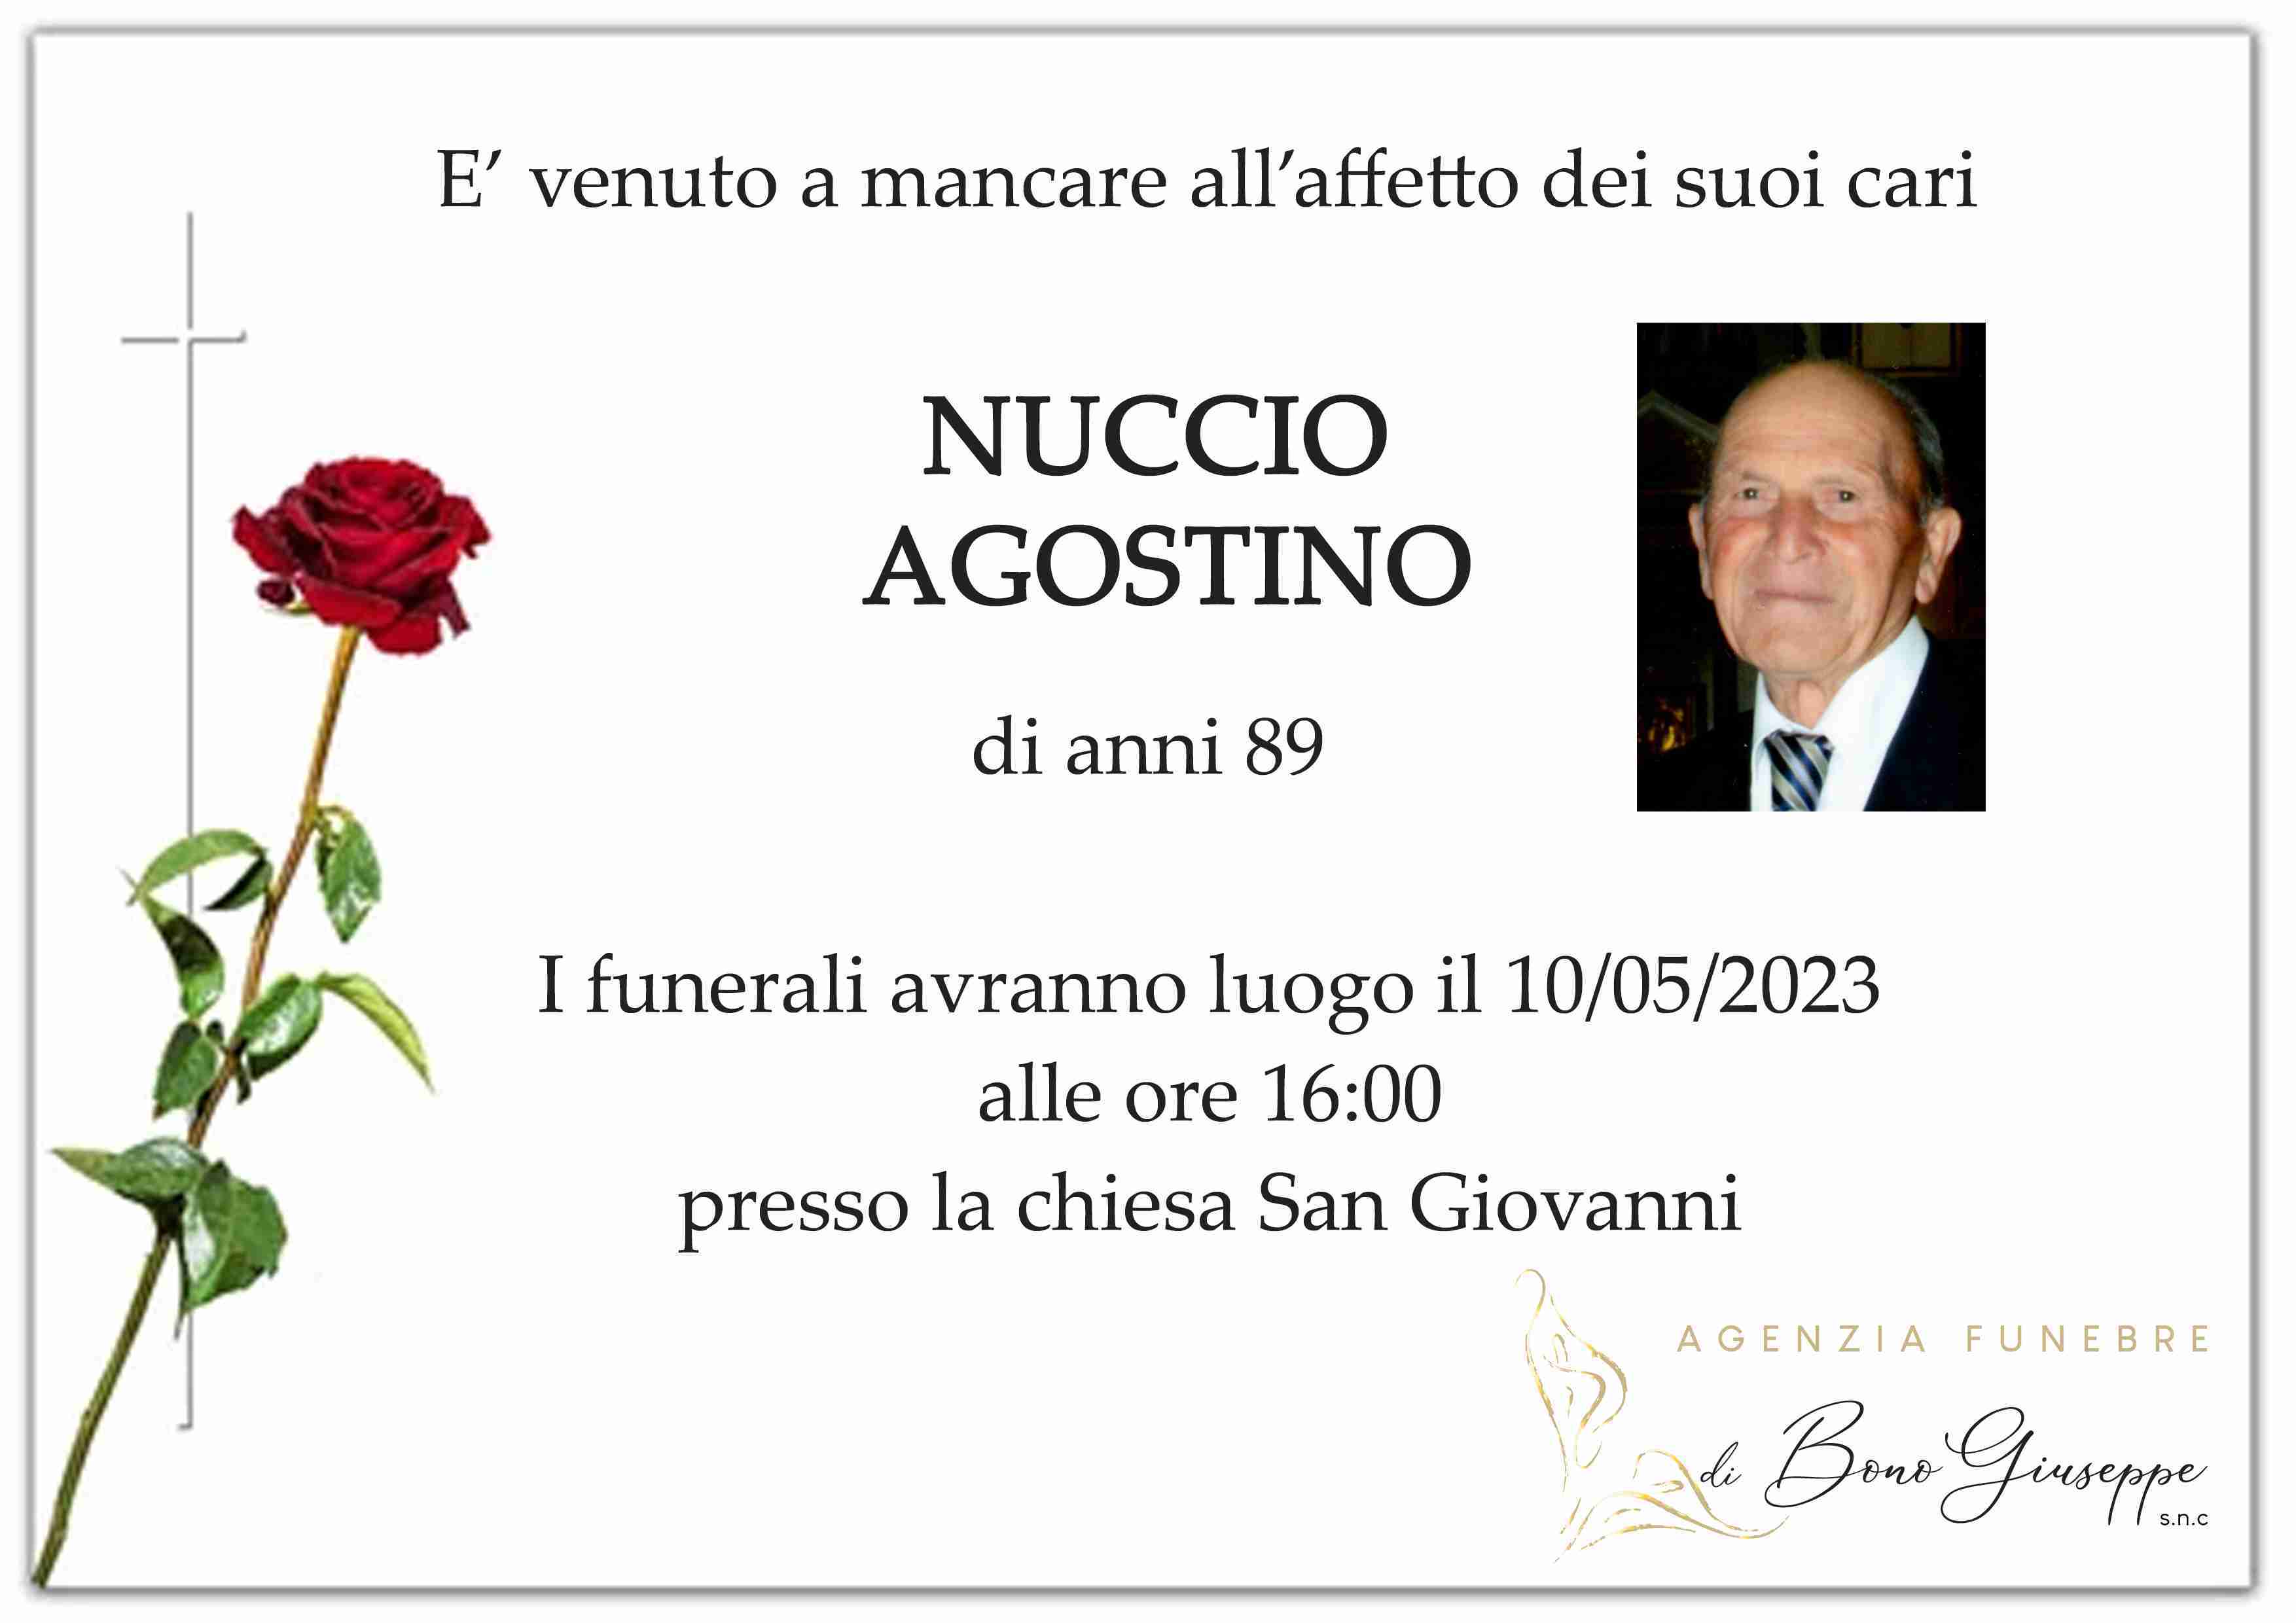 Agostino Nuccio